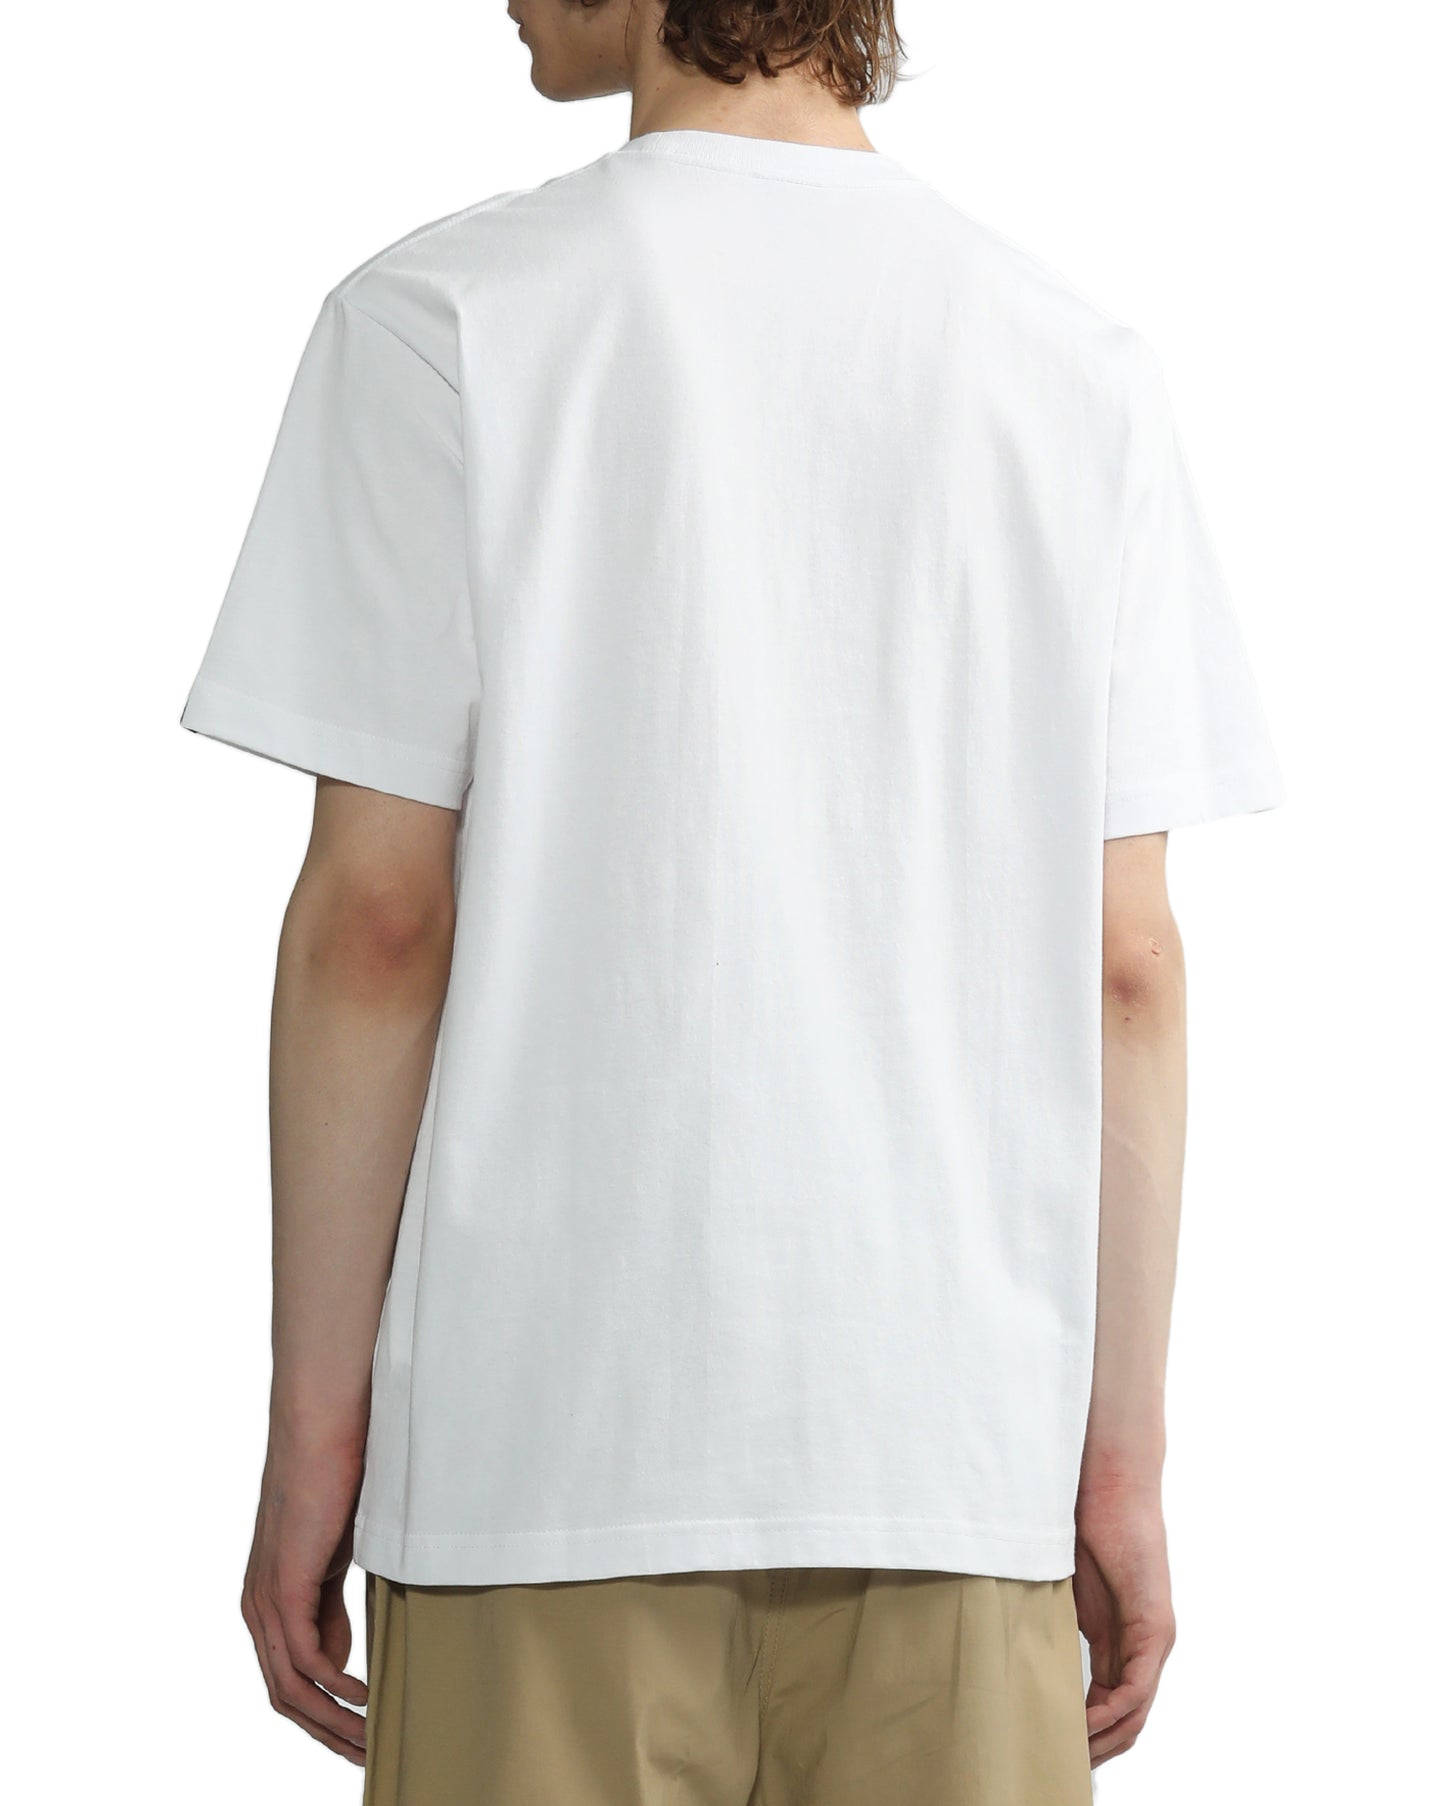 Men's - Finger Lickin' Good T-shirt in White